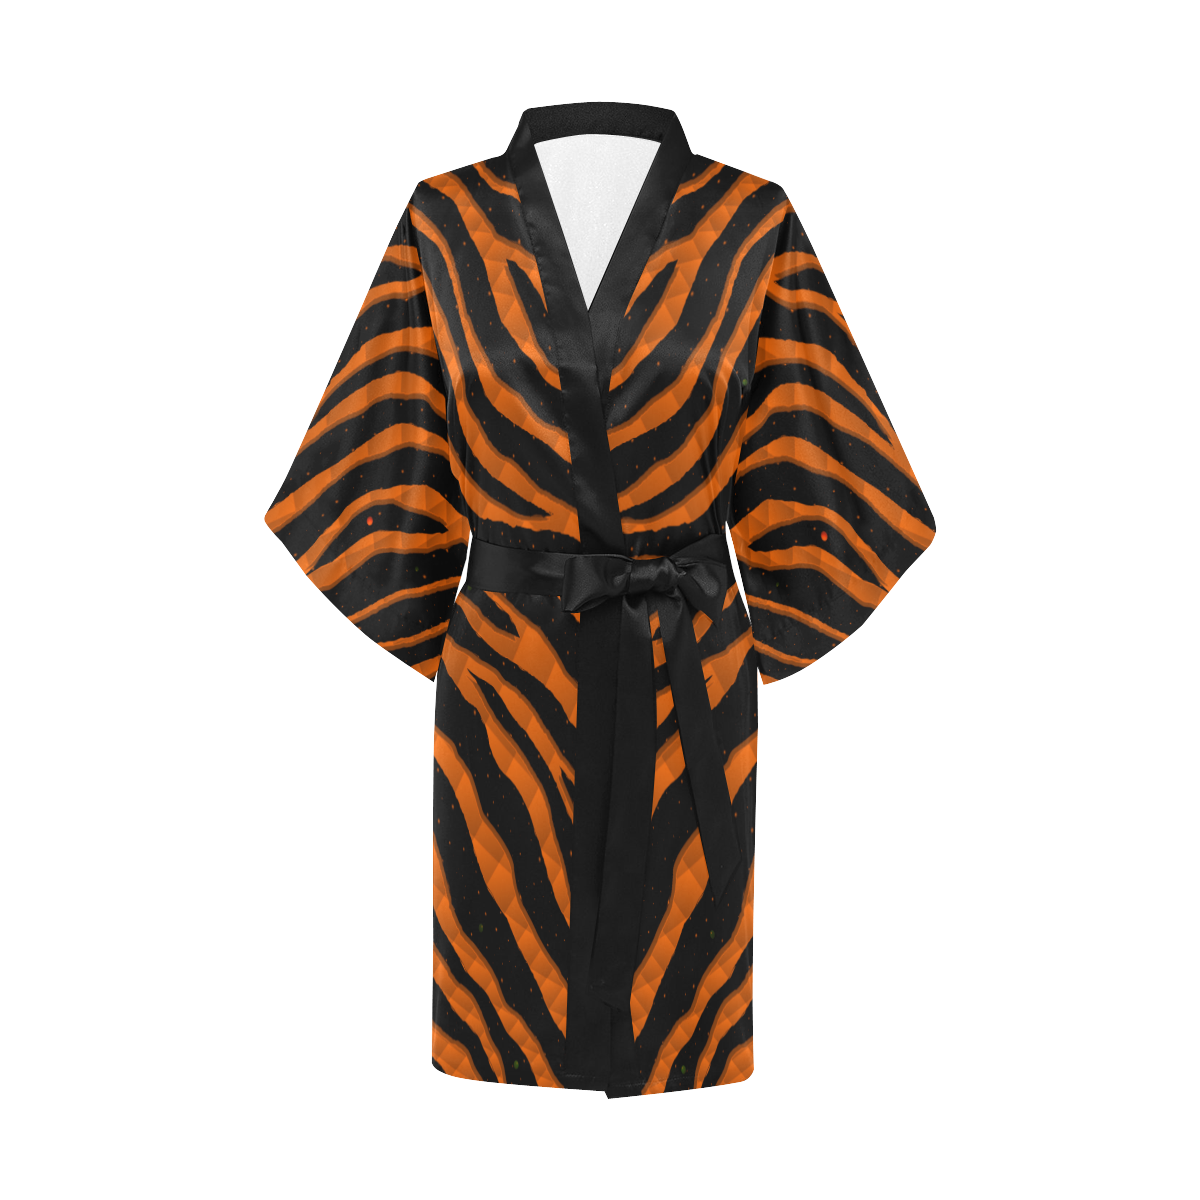 Ripped SpaceTime Stripes - Orange Kimono Robe